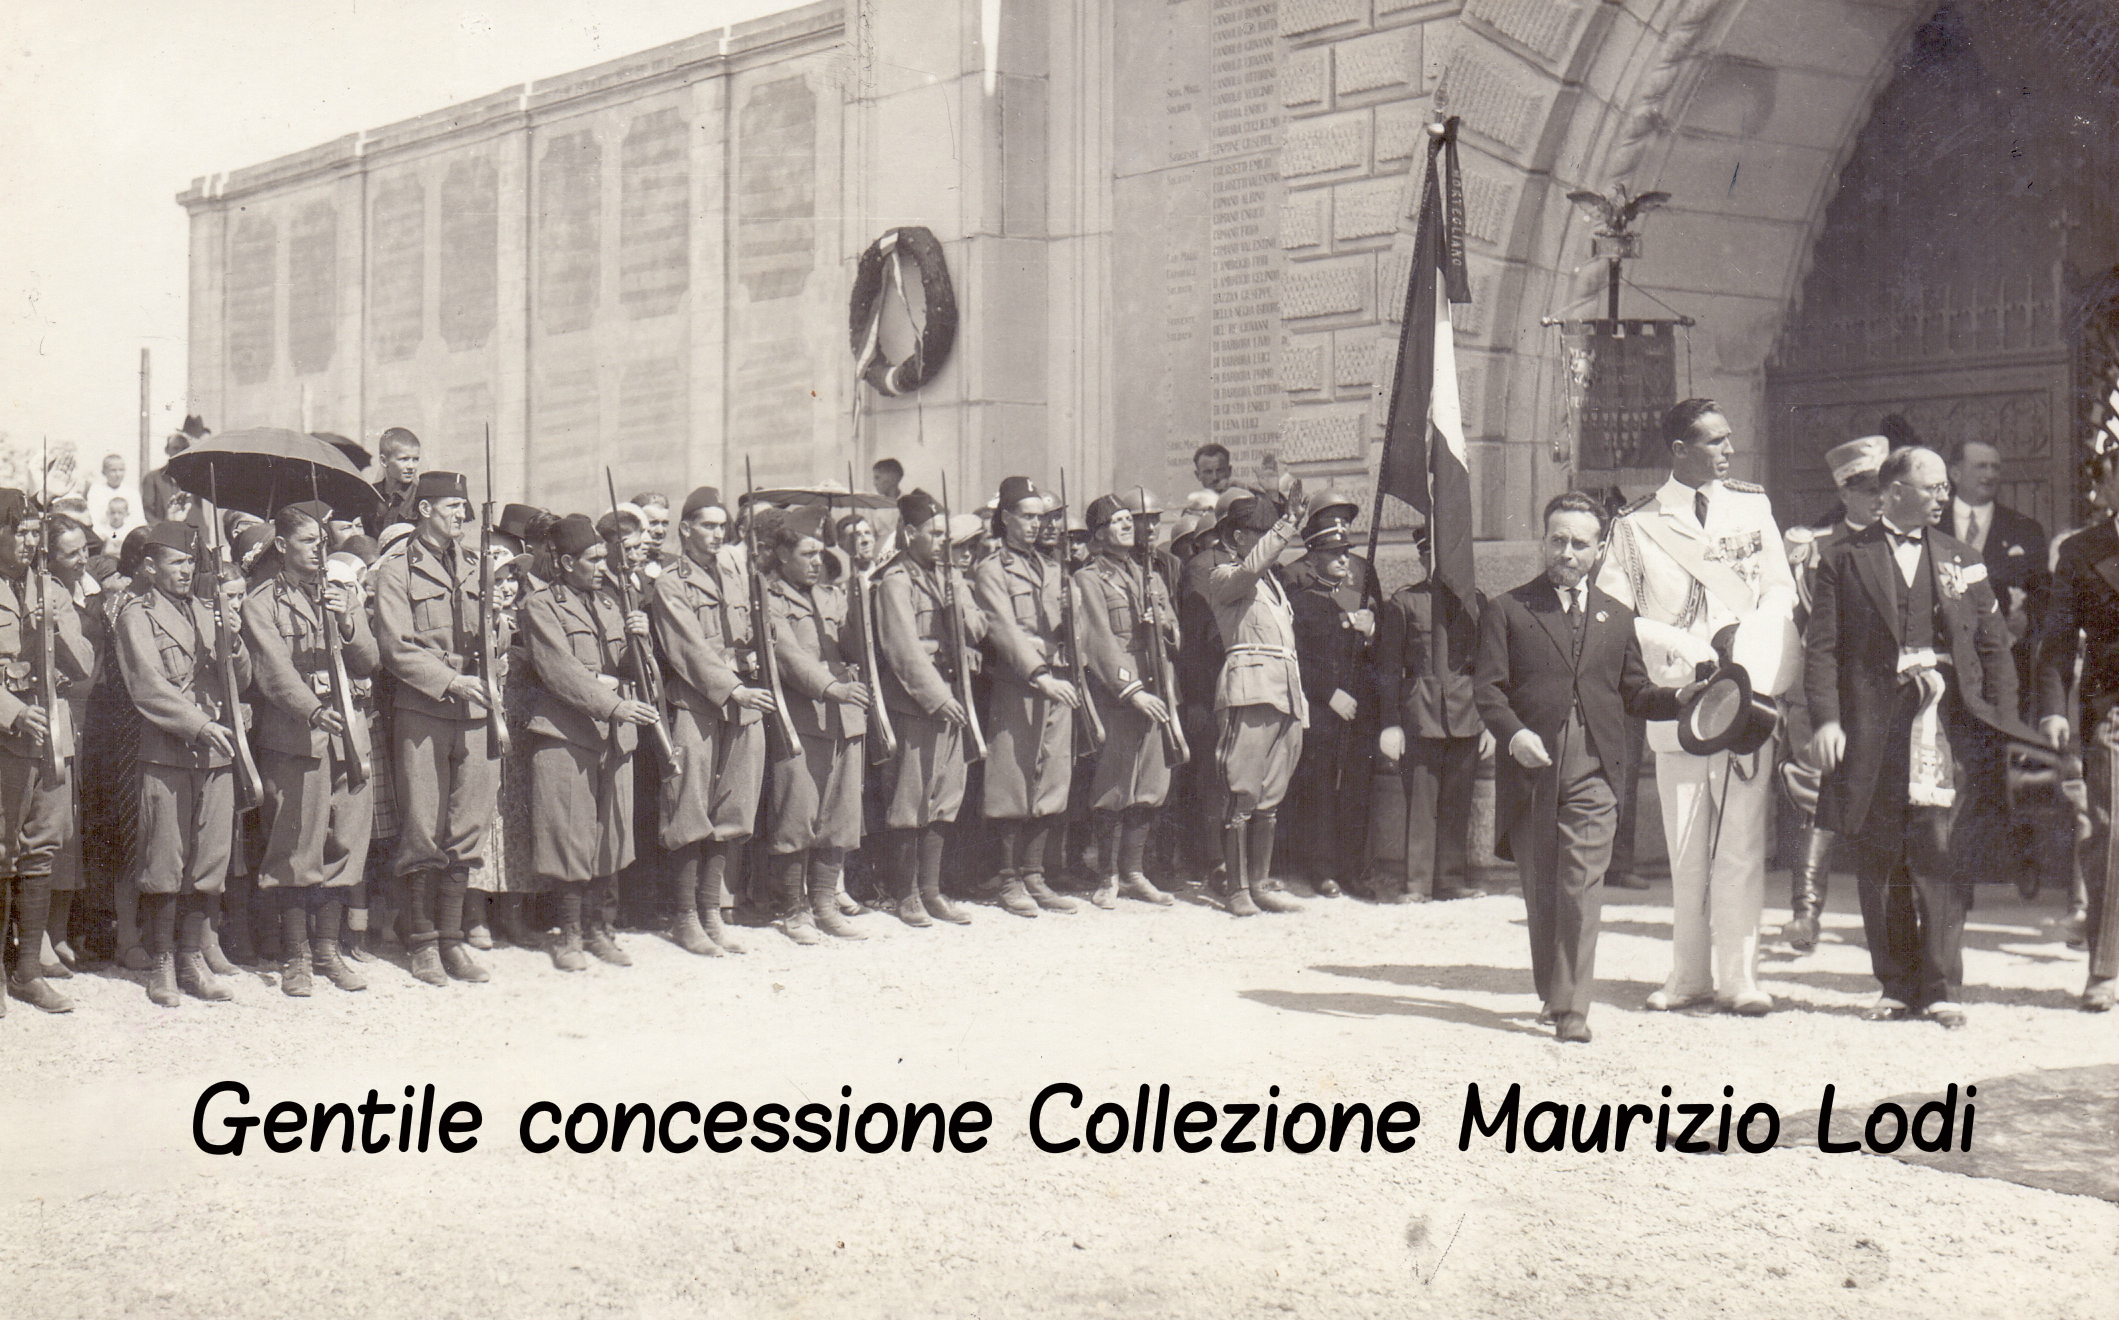 Mortegliano (Ud) 28 agosto 1932 S.A.R. Amedeo di Savoia Duca Aosta inaugurazione Monumento ai Caduti e del Parco della Rimembranza (c).jpg